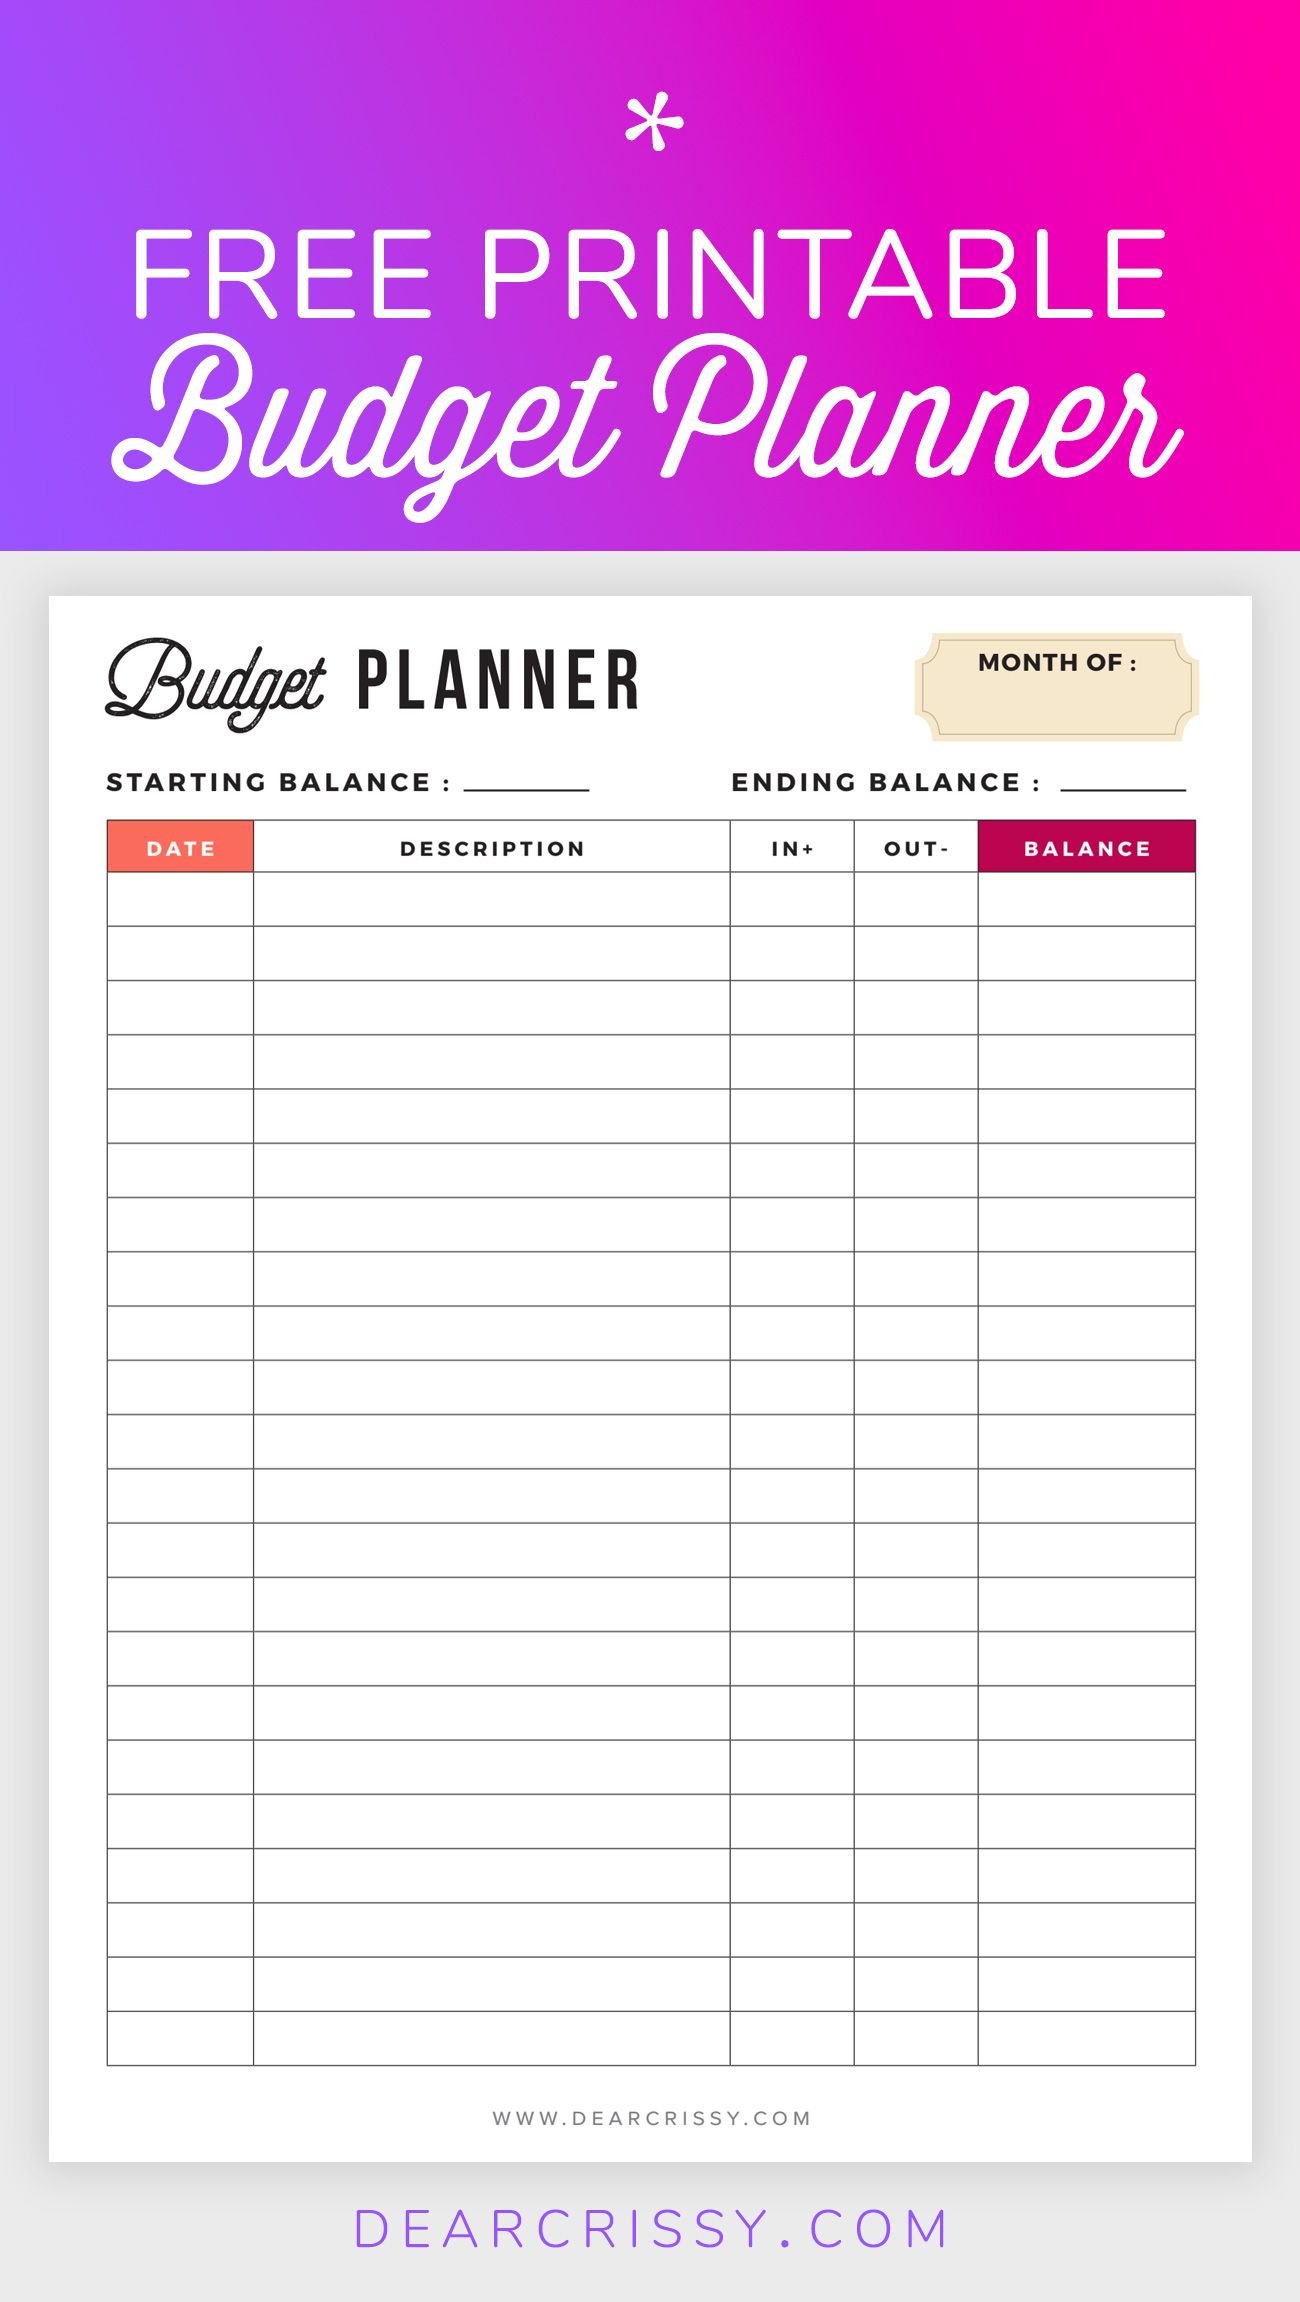 Free Budget Planner Printable - Printable Finance Planner | Office - Free Printable Bill Planner